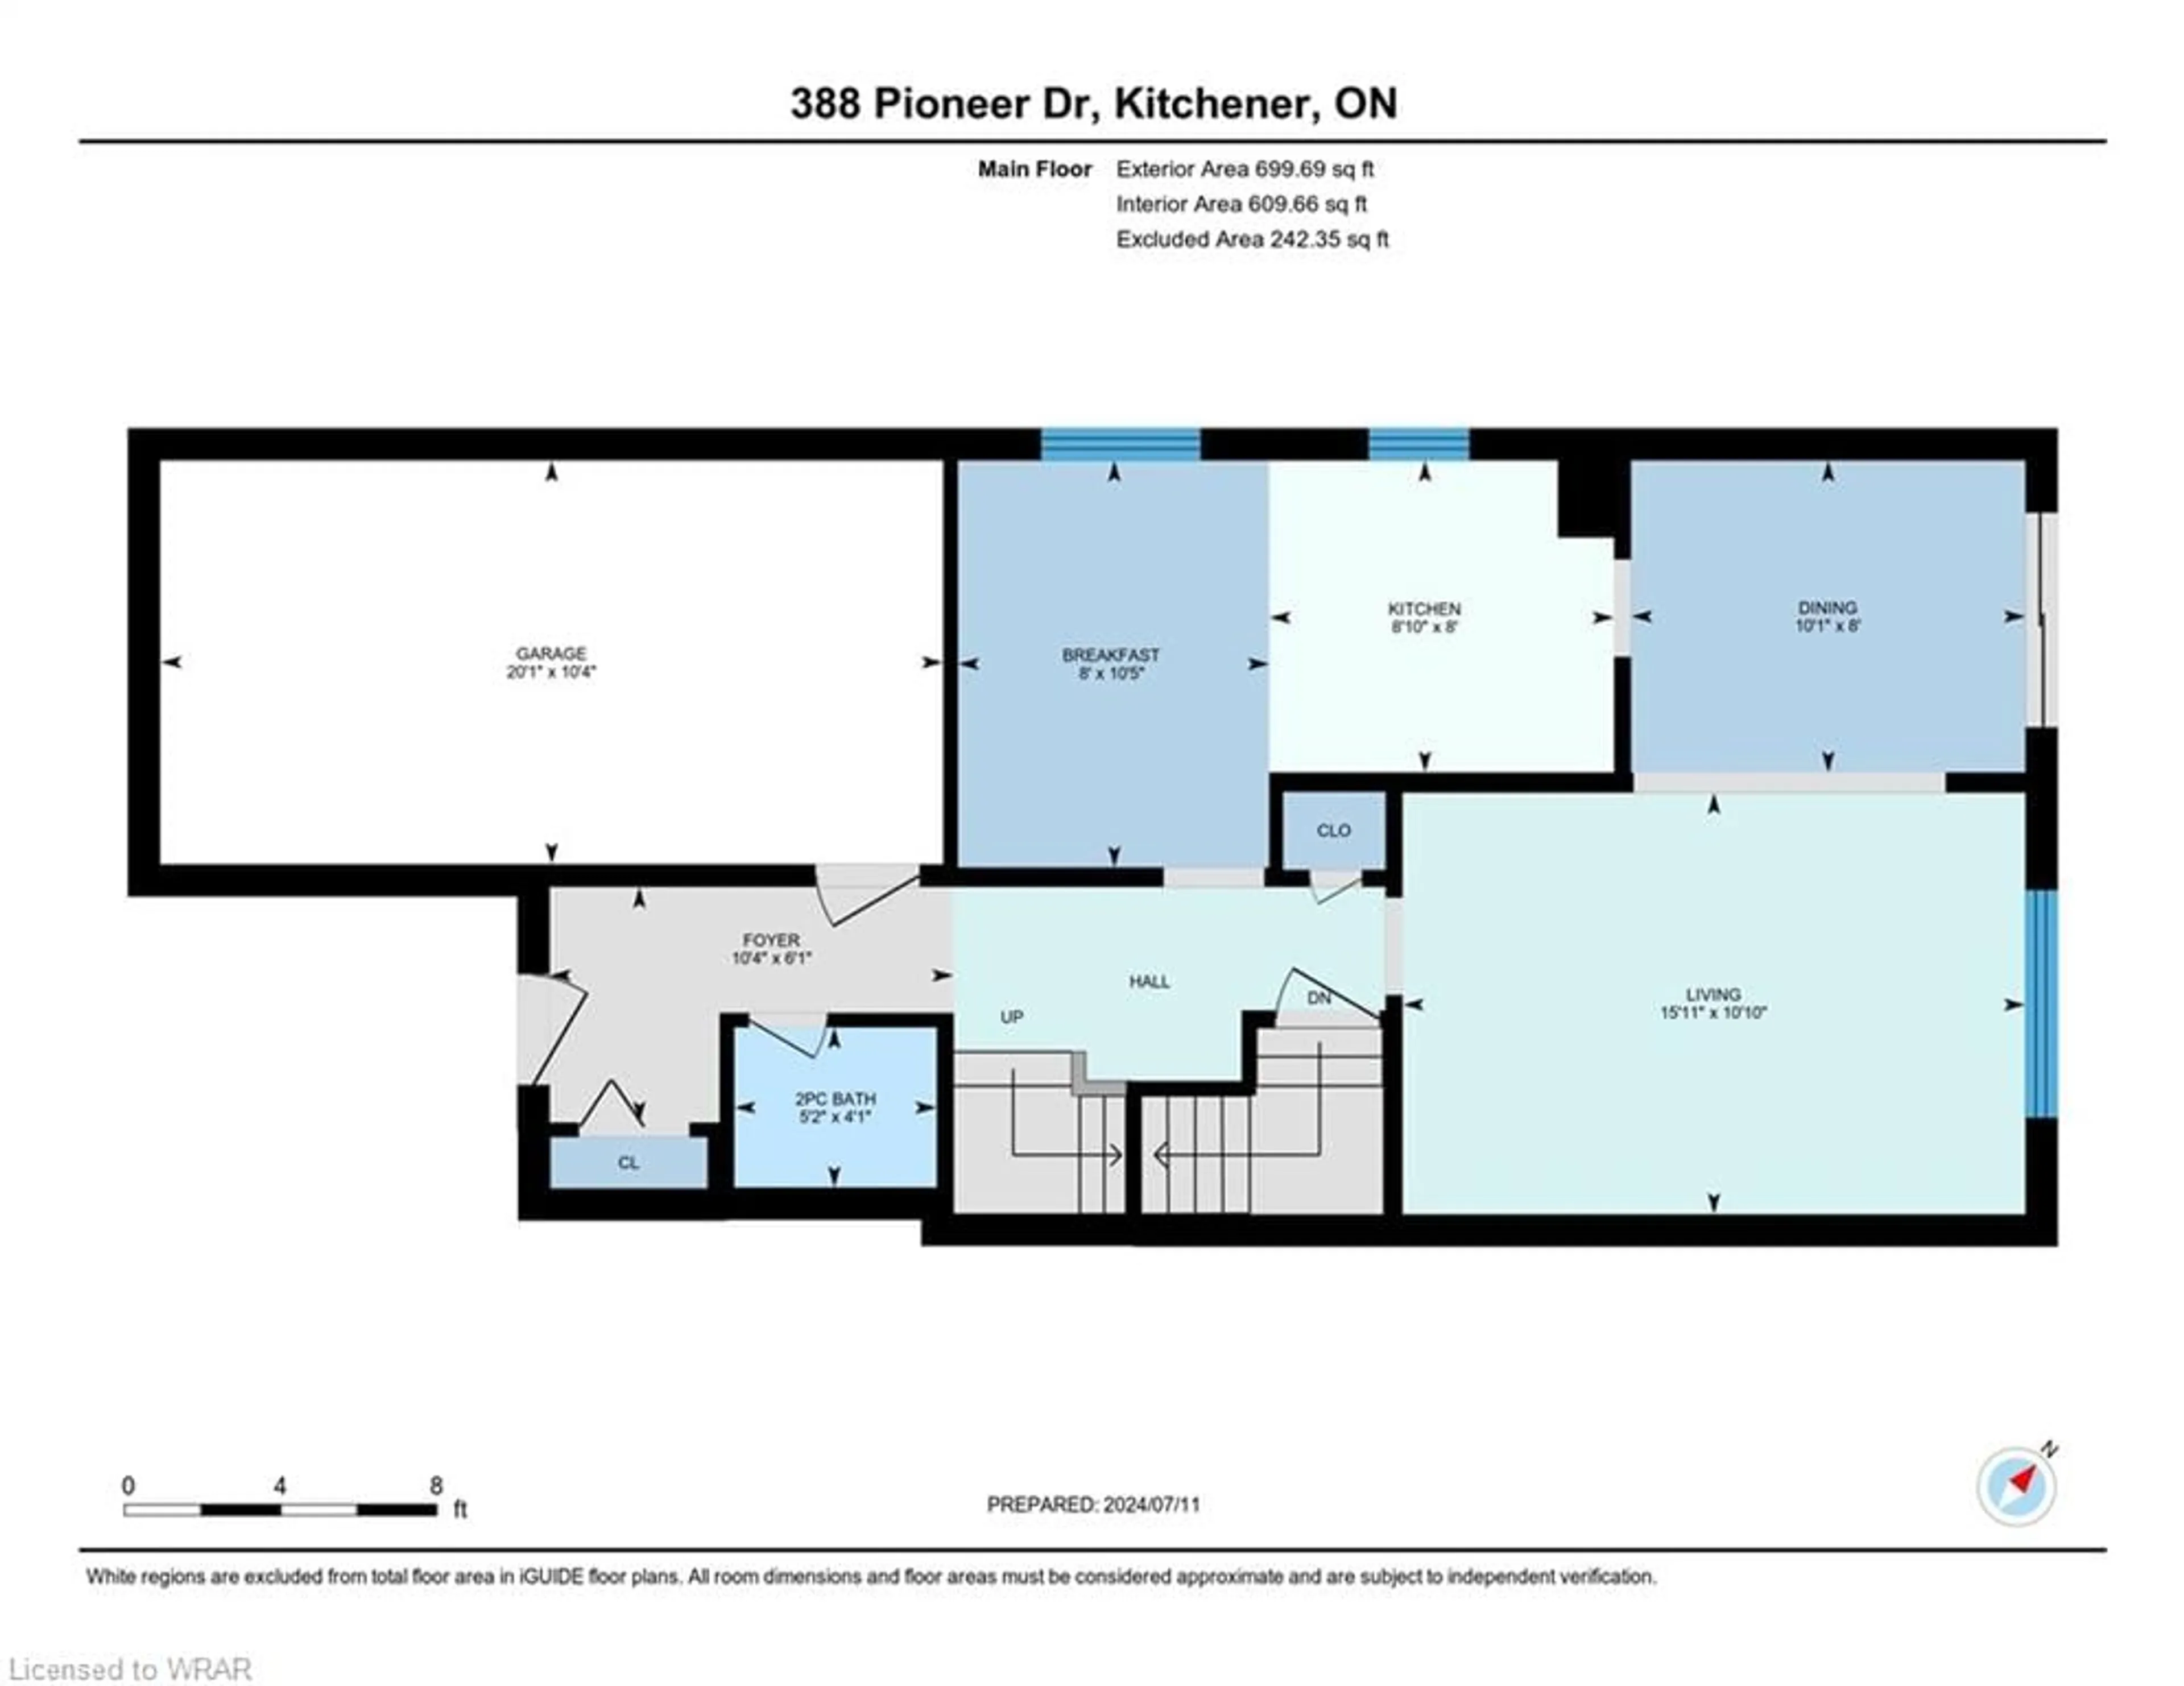 Floor plan for 388 Pioneer Dr, Kitchener Ontario N2P 1K6